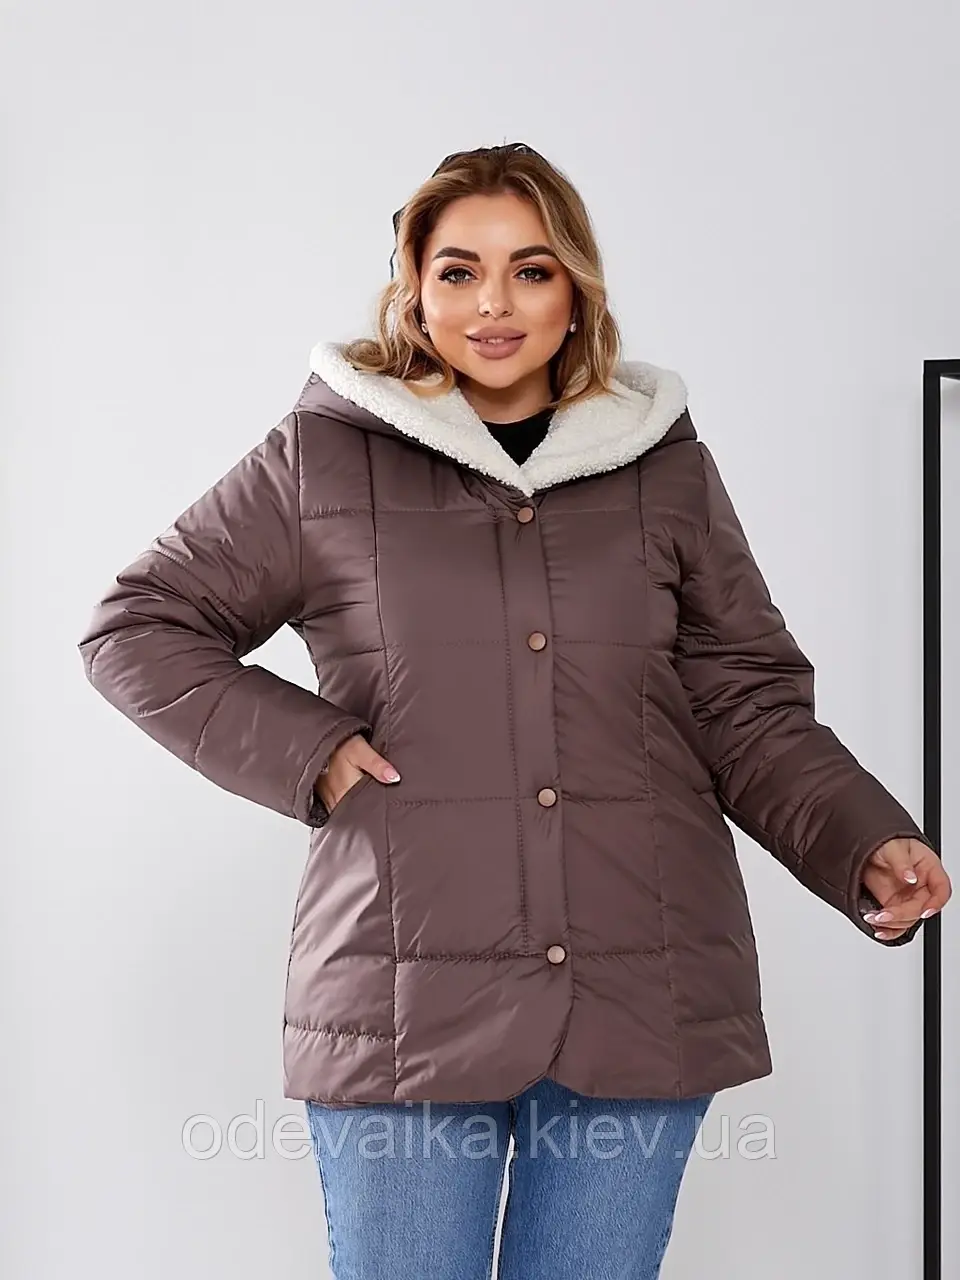 Жіноча зимова куртка з теплим капюшоном 46-58 розміру